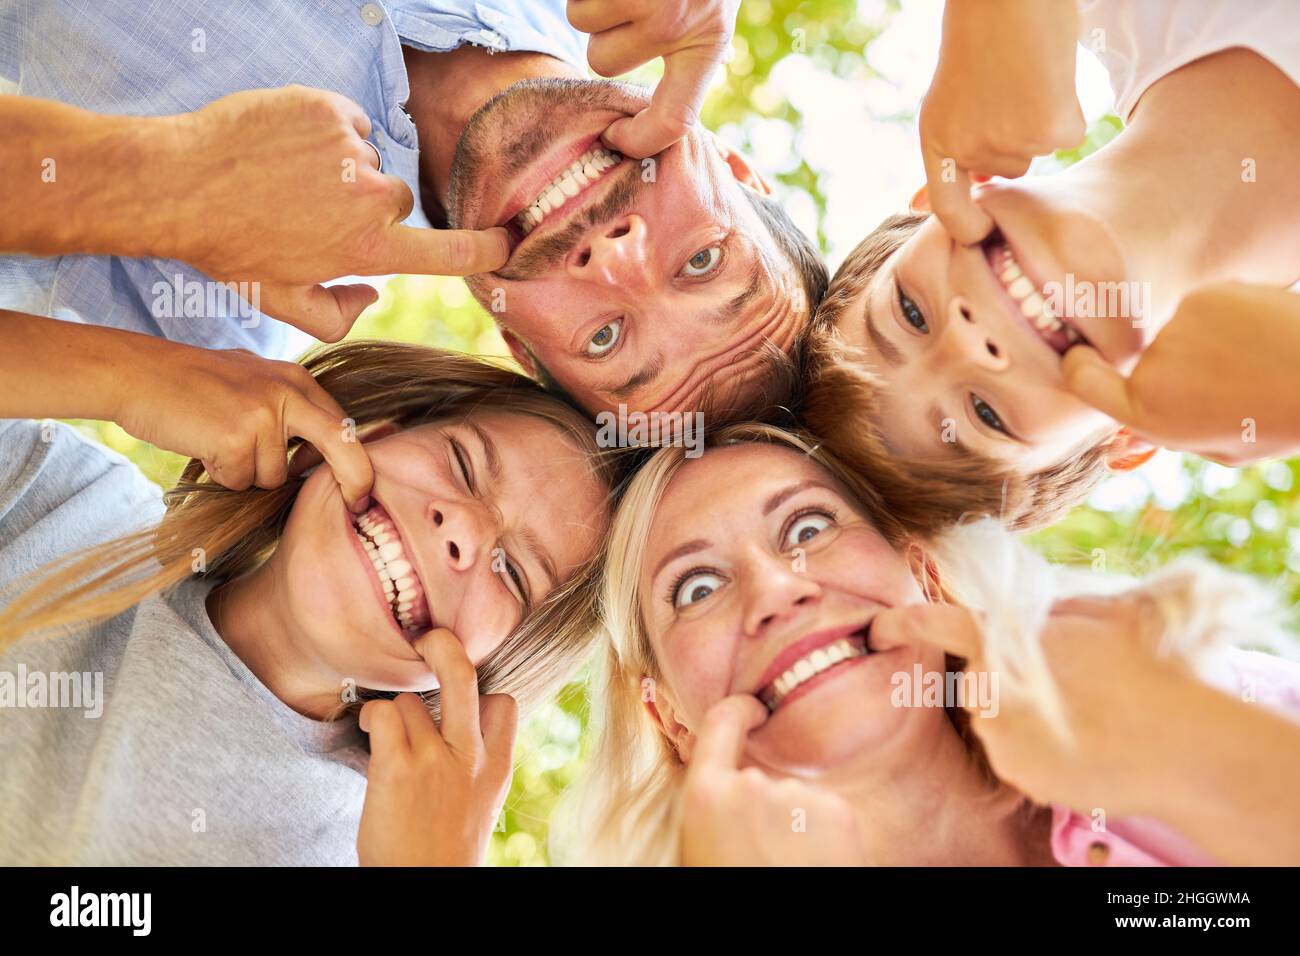 Les parents et les enfants s'amusent ensemble à faire des visages et à montrer des dents Banque D'Images